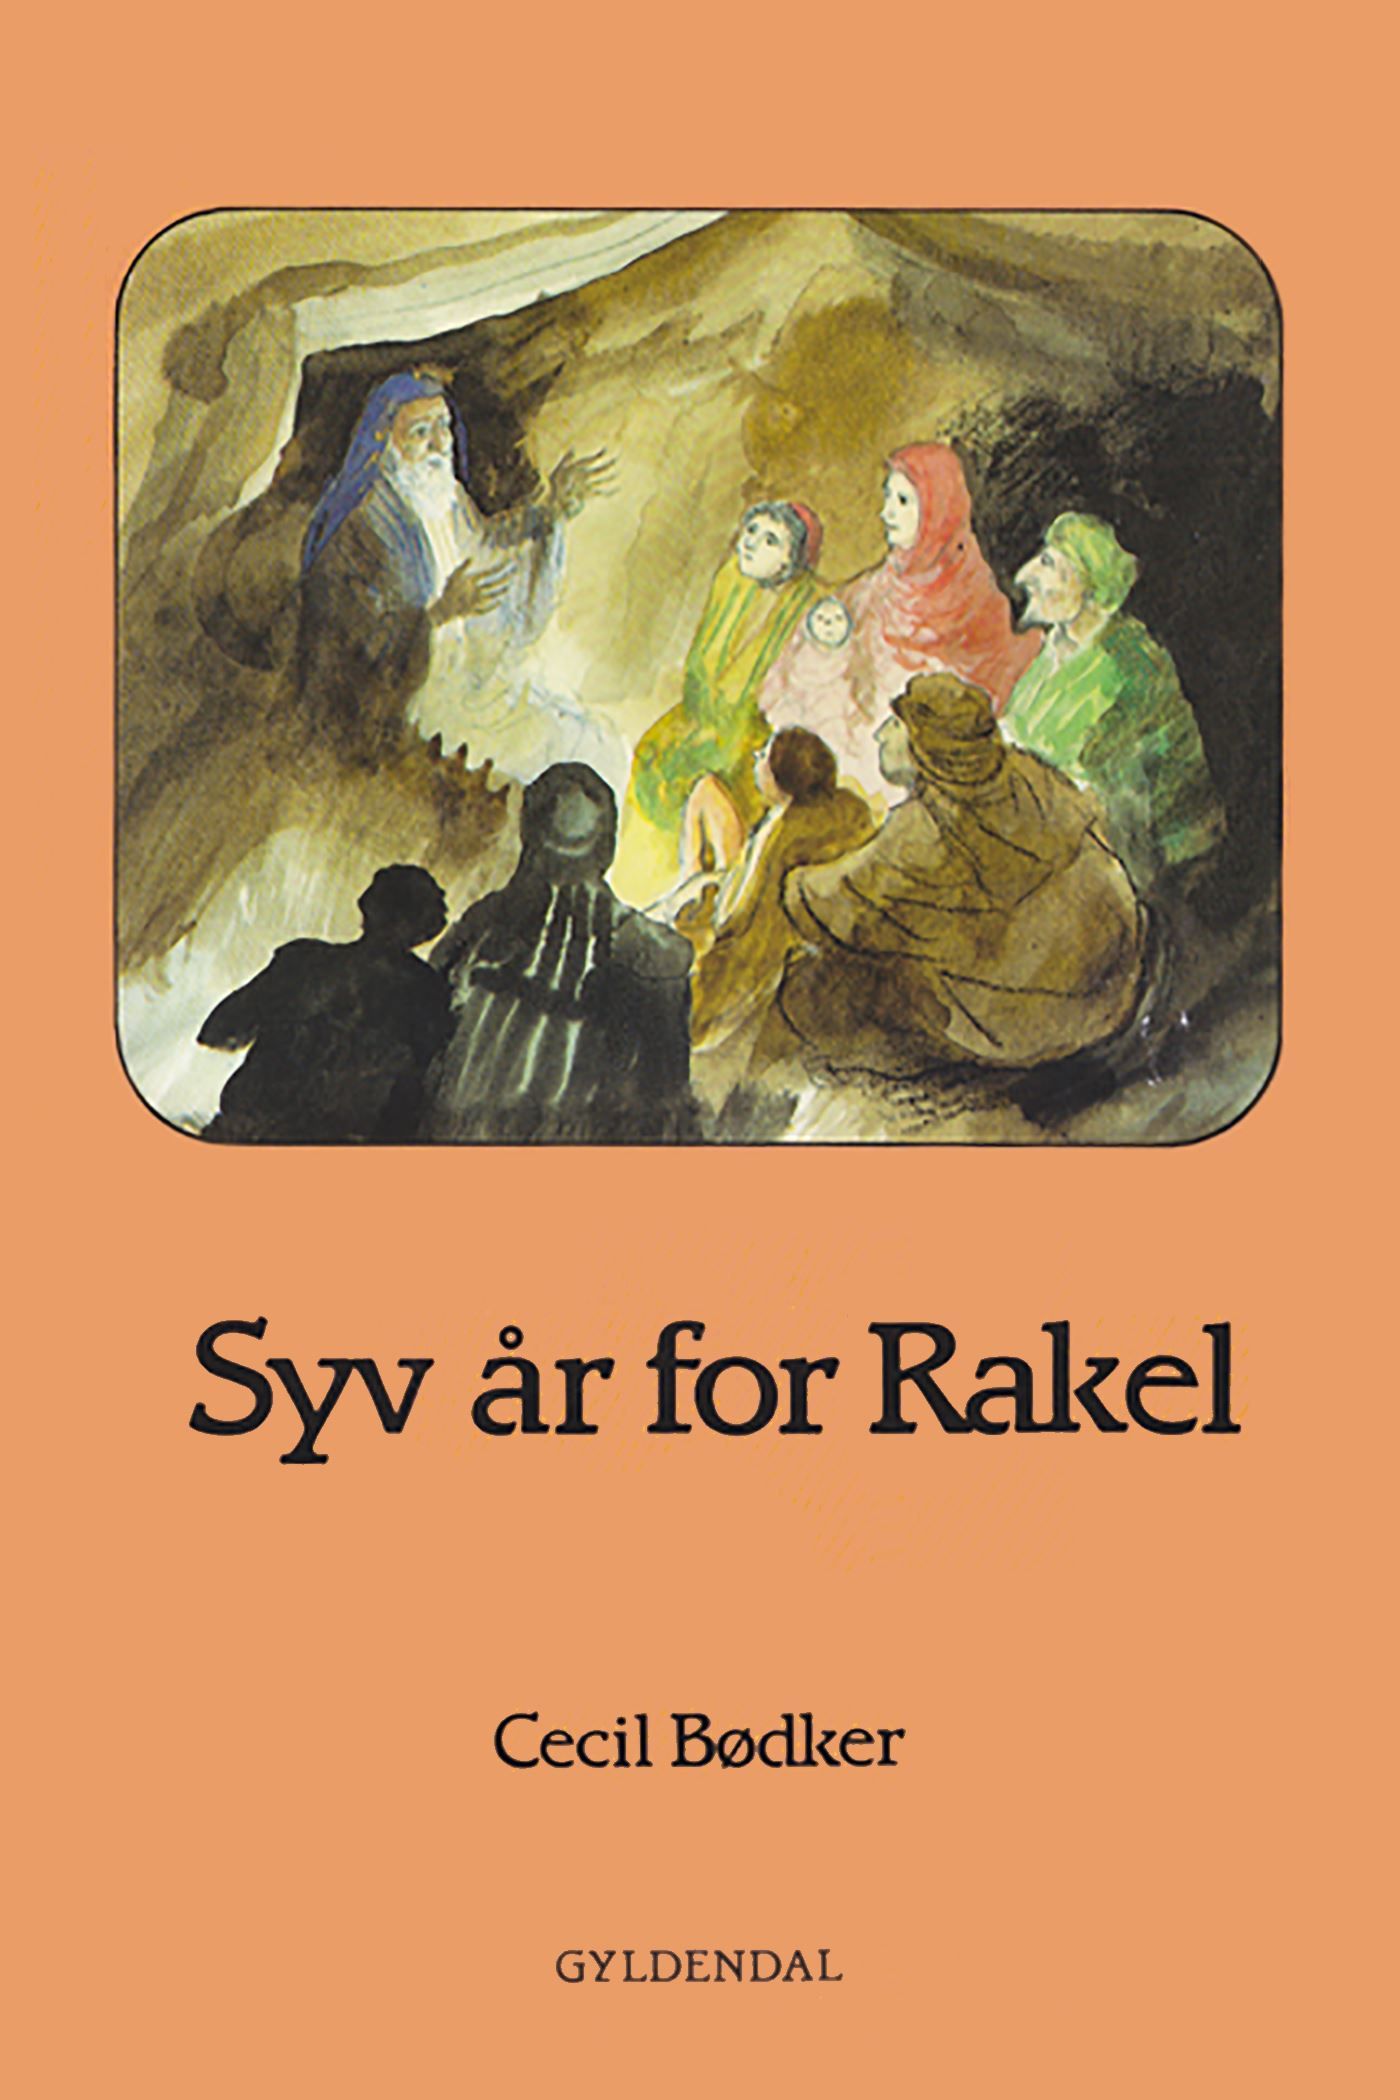 Syv år for Rakel, ljudbok av Cecil Bødker